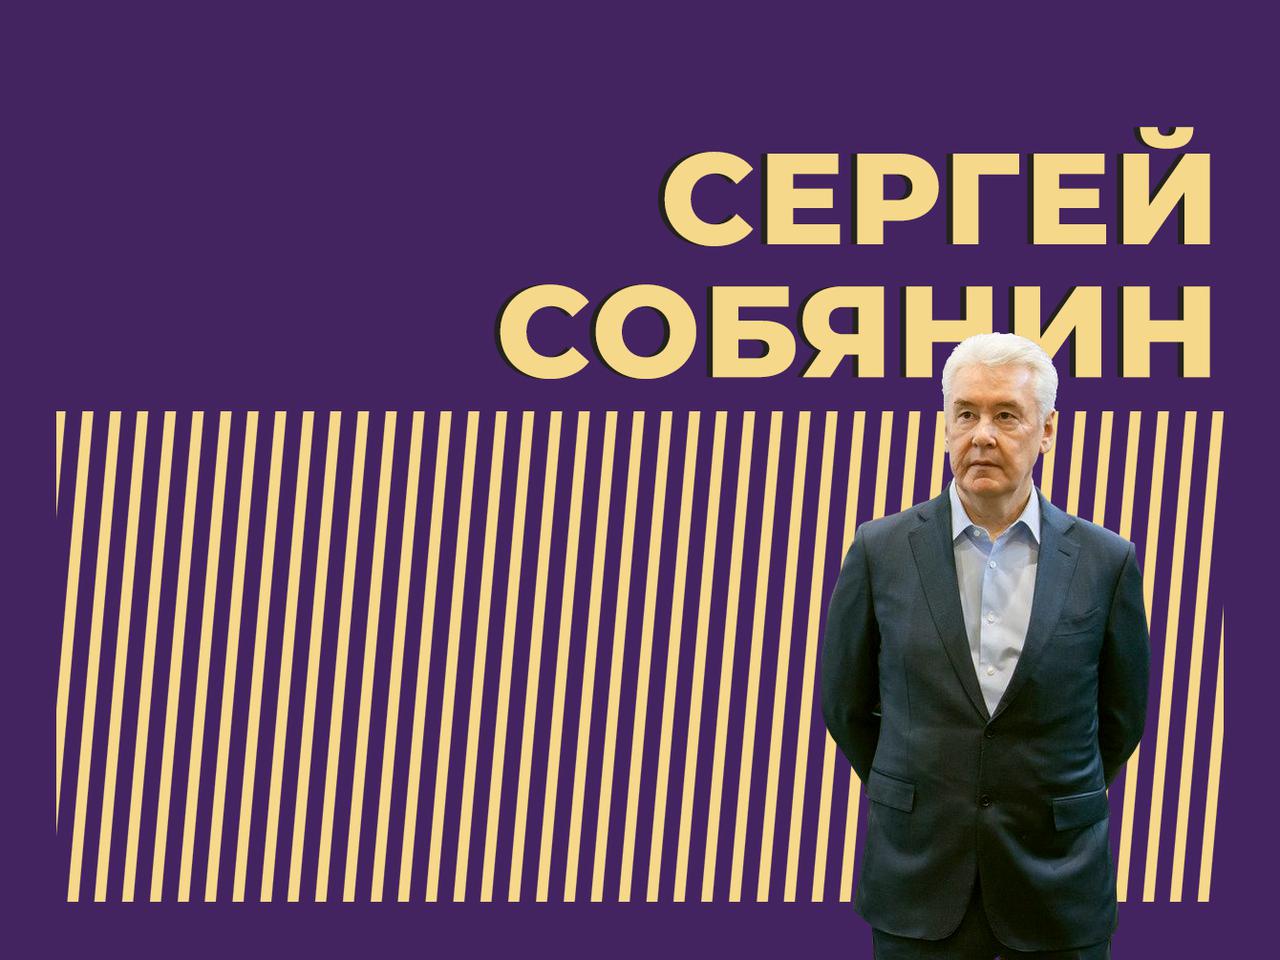 Сергей Собянин: биография, национальность и личная жизнь